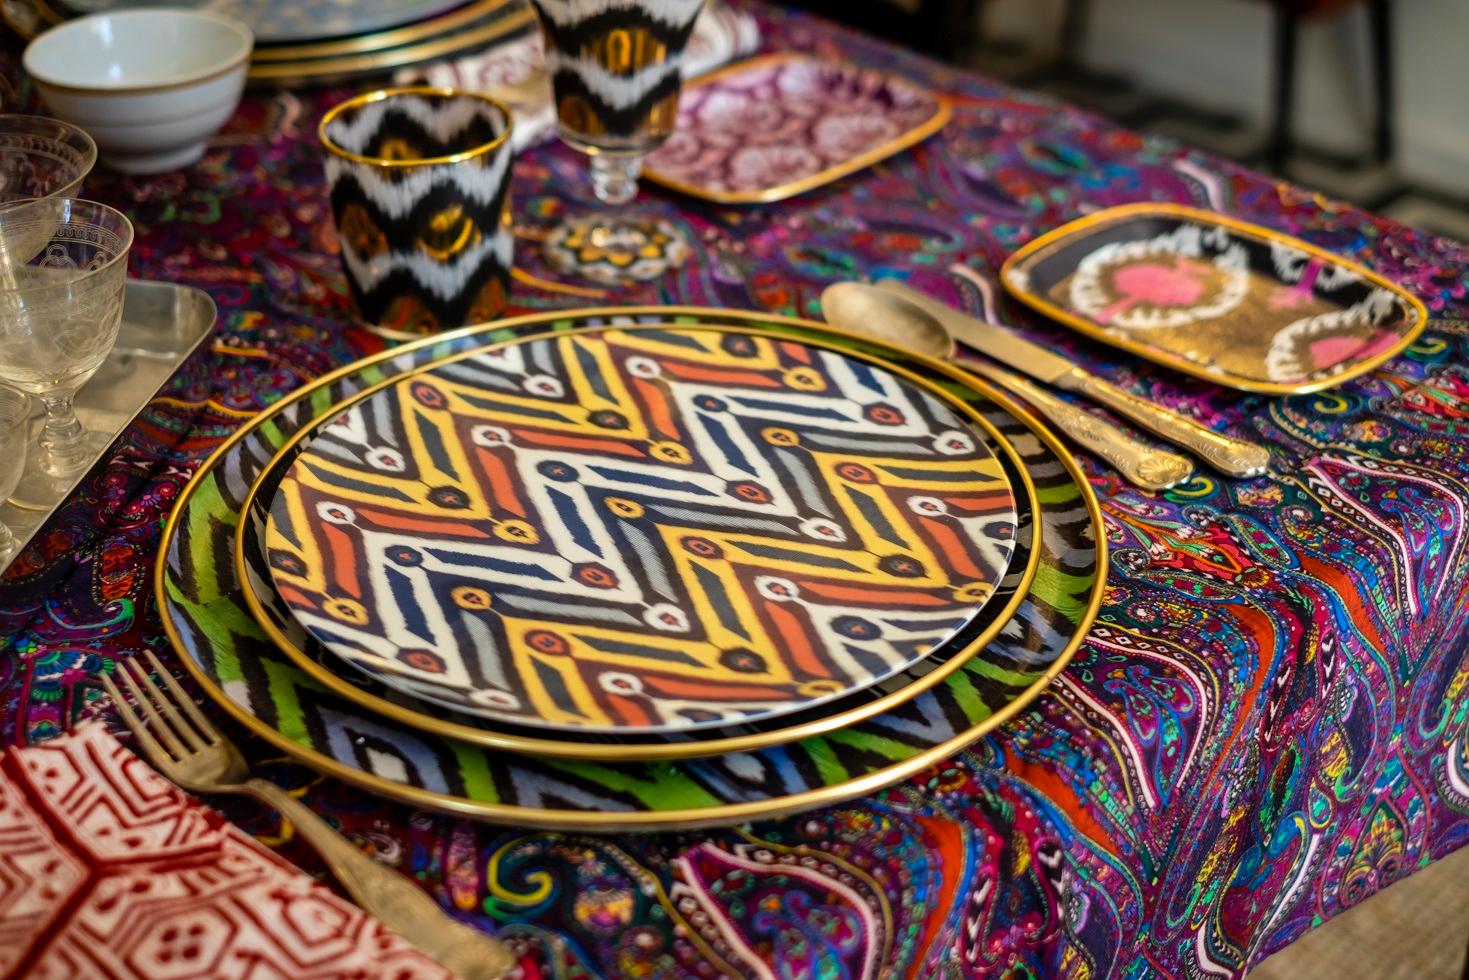 Les couleurs sont la marque de fabrique de Les-Ottomans et l'ikat notre signature.
Set de 6 assiettes à dessert, fabriquées en Italie.